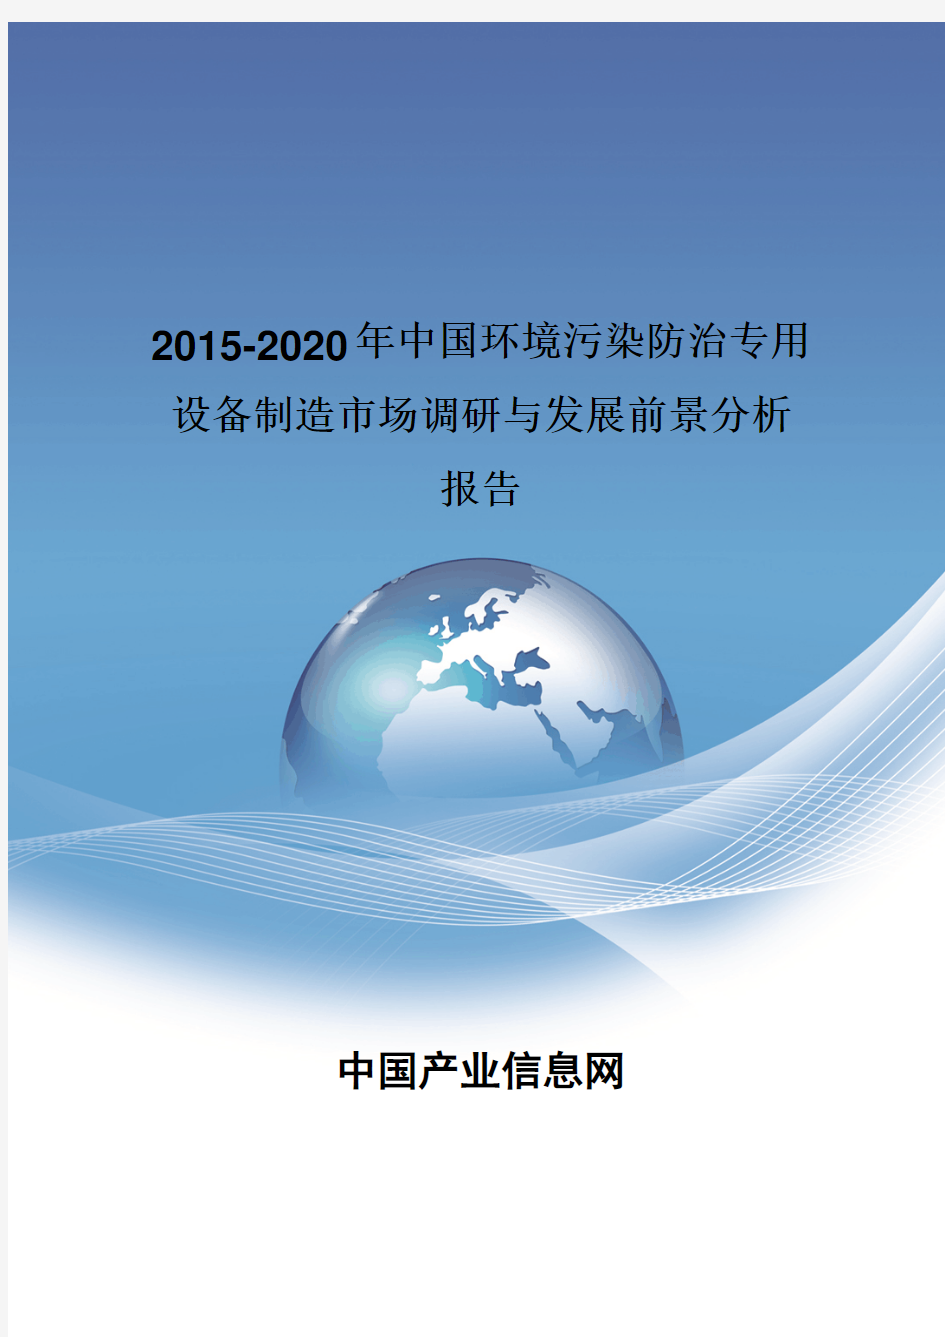 2015-2020年中国环境污染防治专用设备制造发展前景分析报告